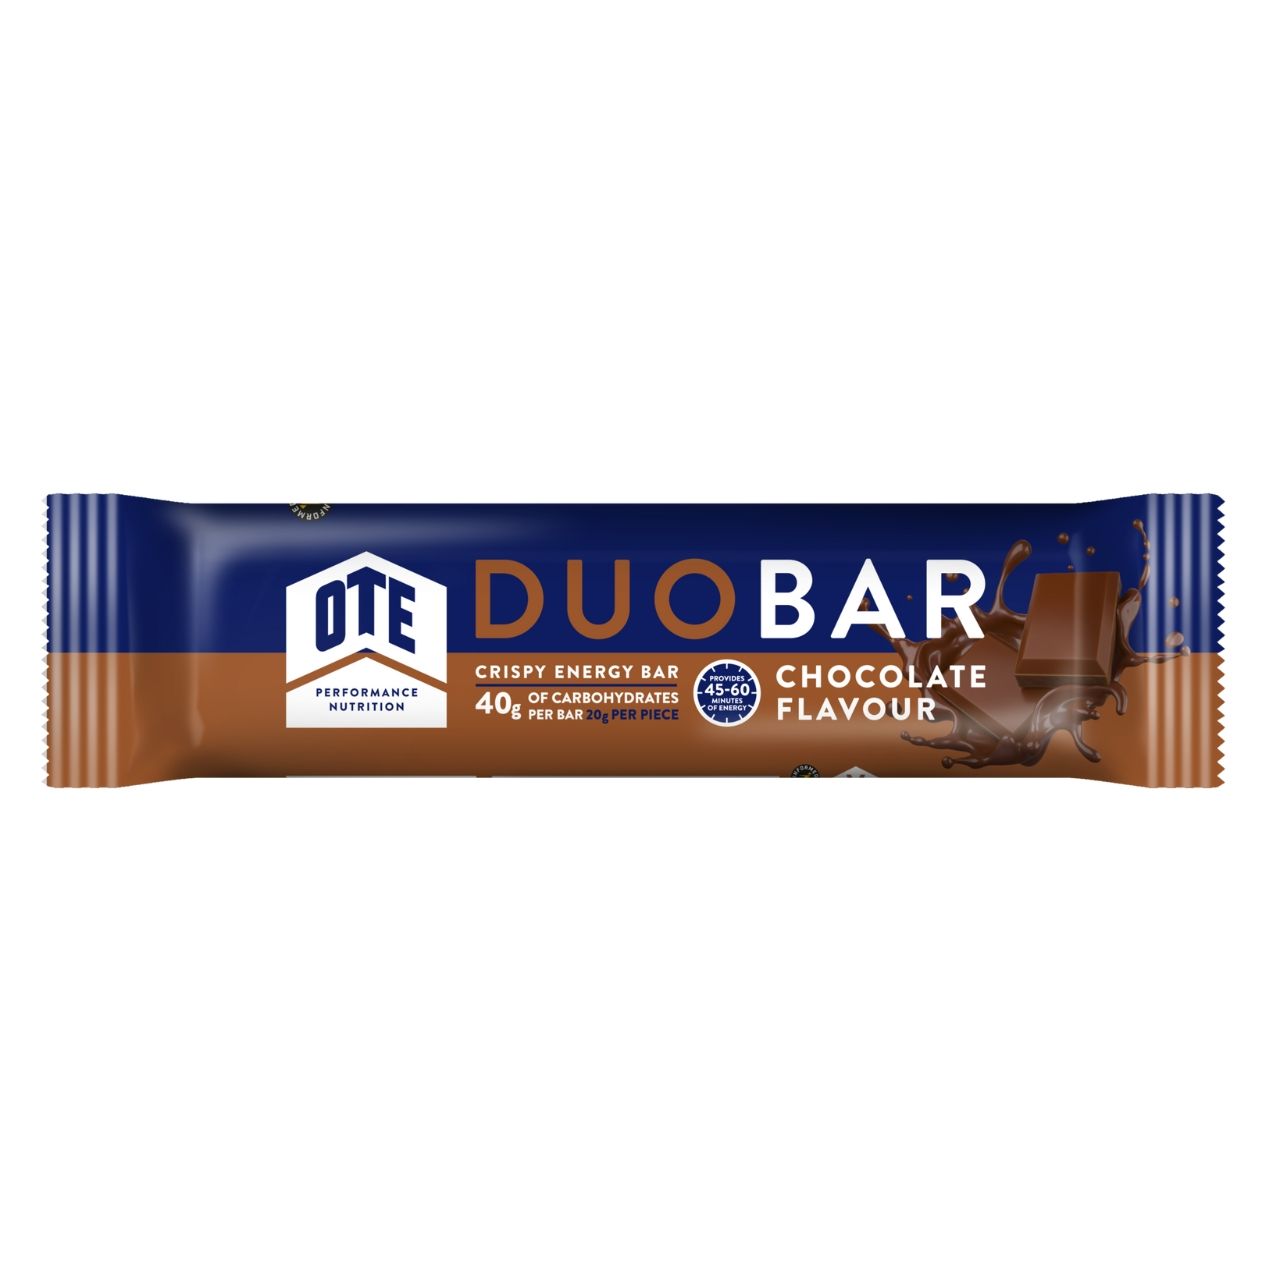  OTE Duo Bar - Thanh năng lượng ngũ cốc 